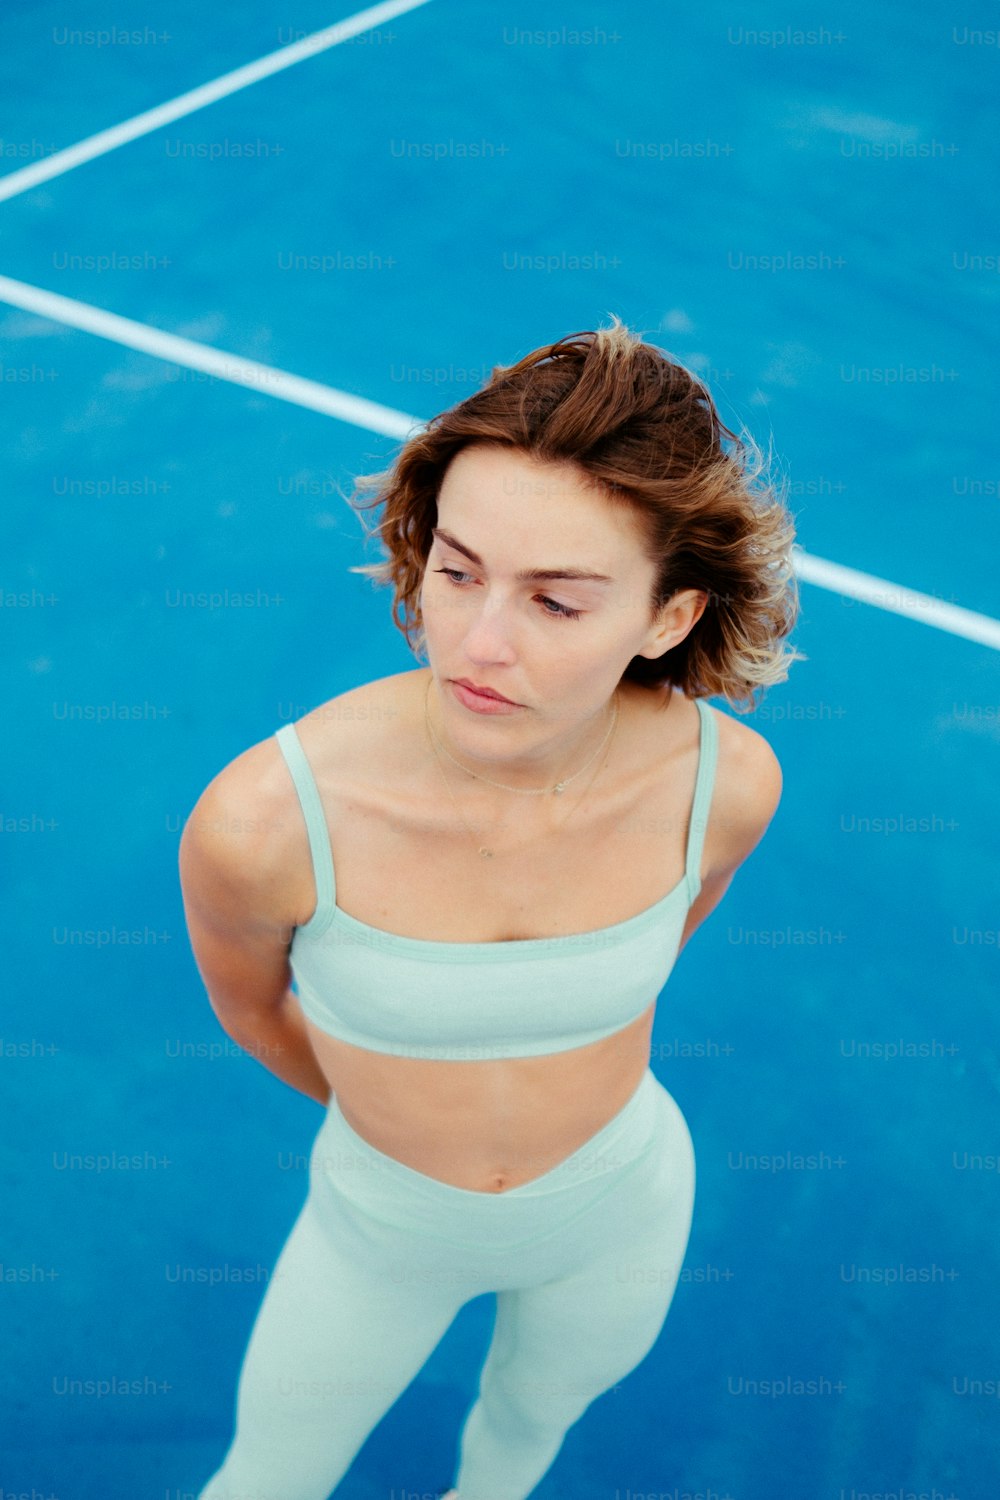 a woman standing on a tennis court holding a racquet